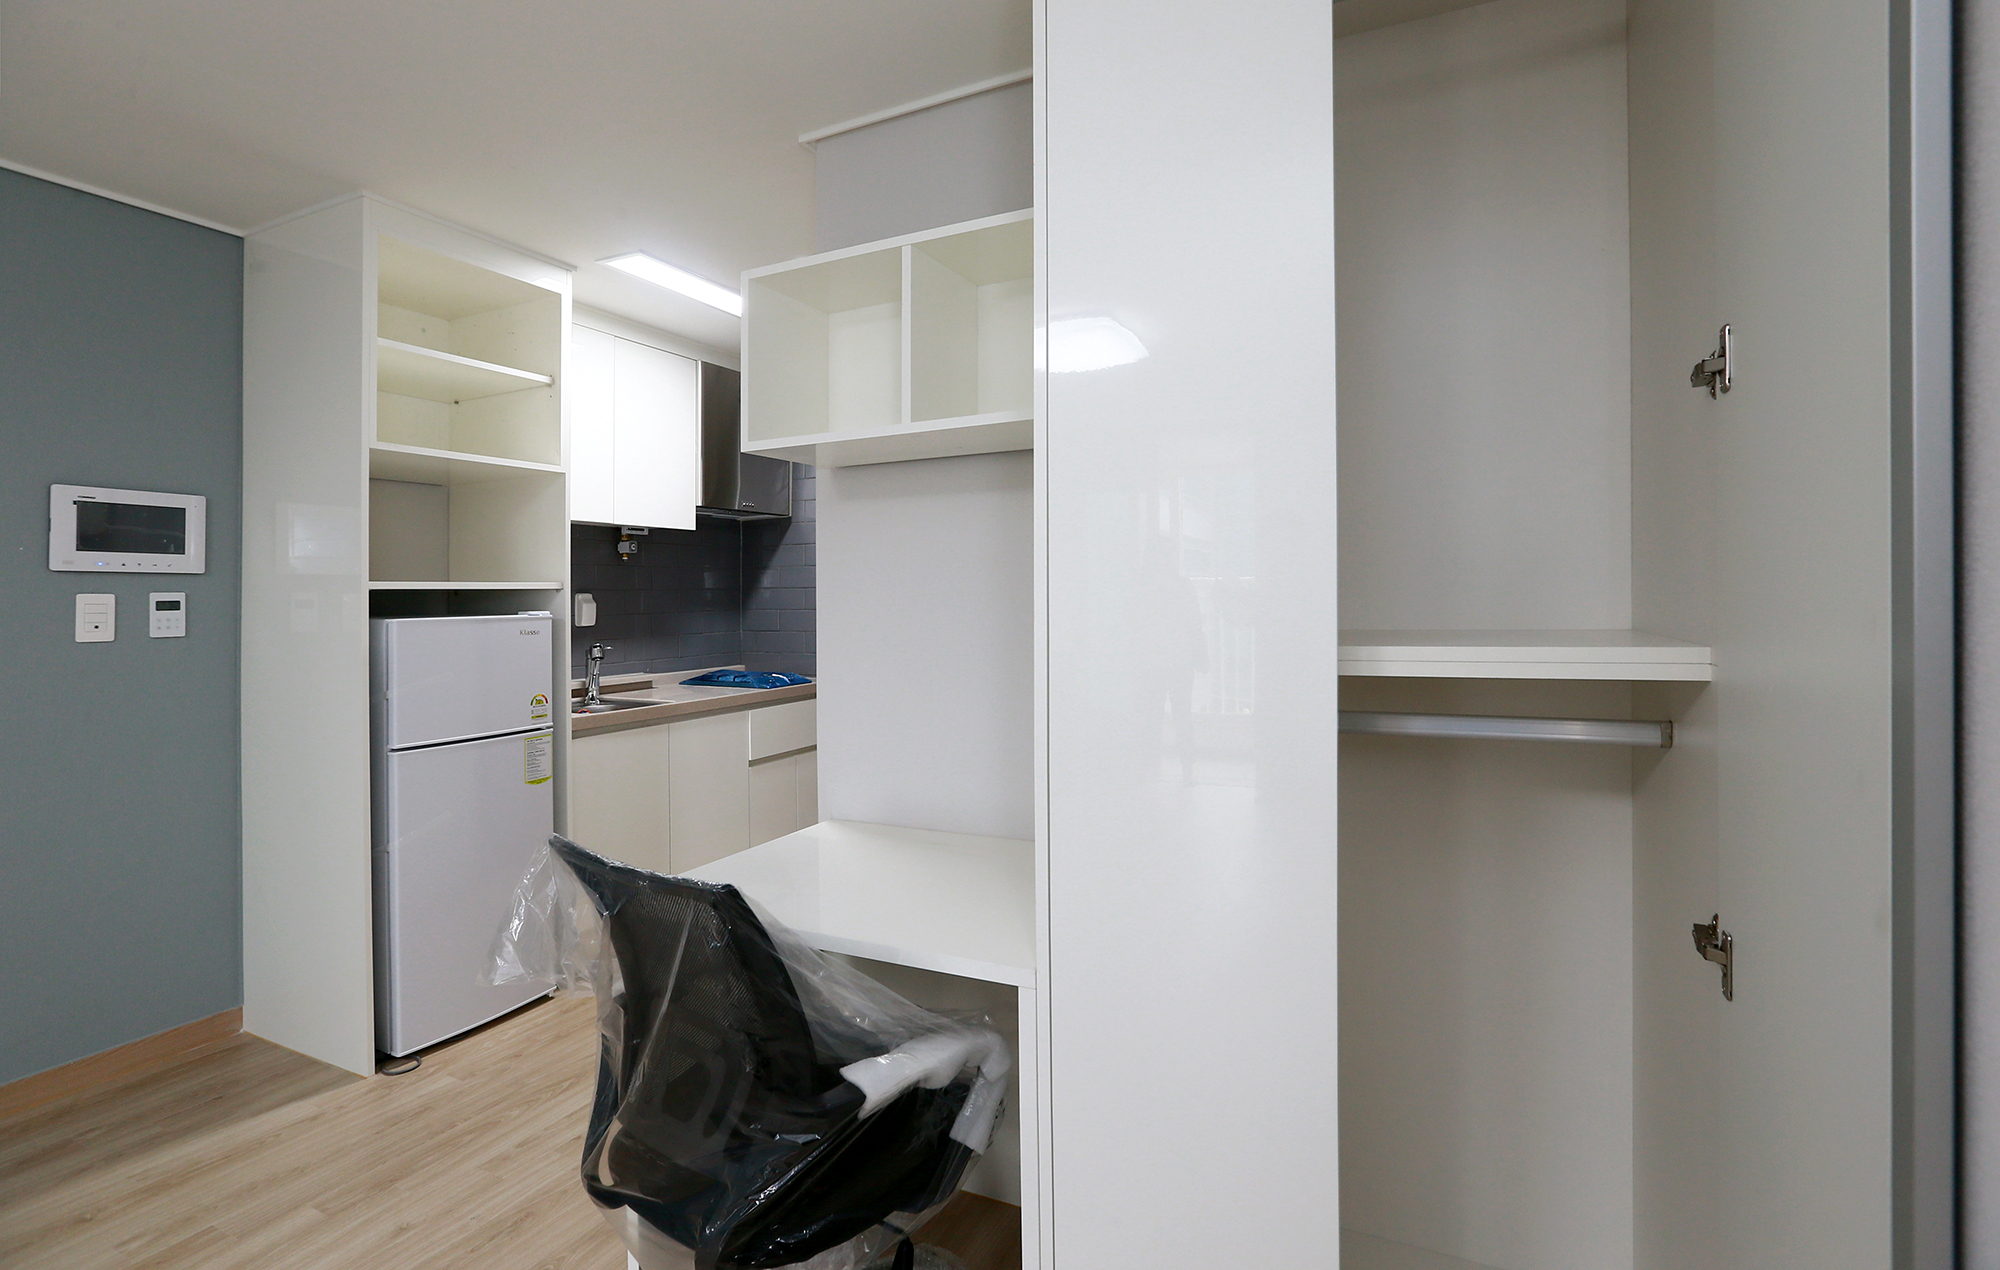 원룸형인 26㎡ 타입에는 책상과 냉장고 등이 기본으로 제공된다. 